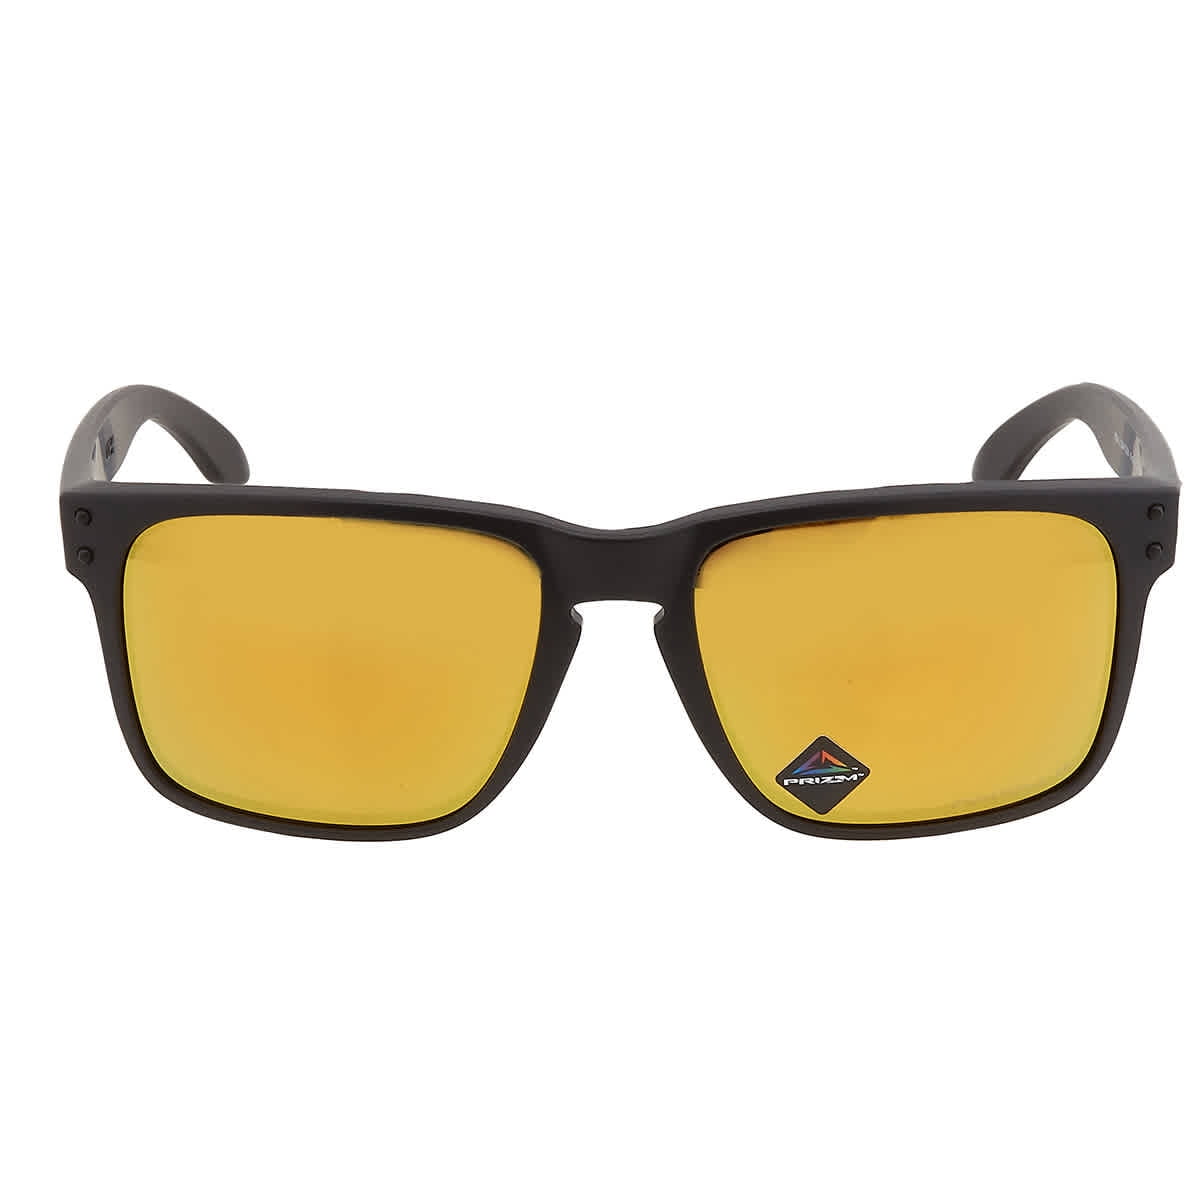 Oakley Holbrook XL Prizm Polarized S3 (VLT 14%) - Sunglasses, Free EU  Delivery